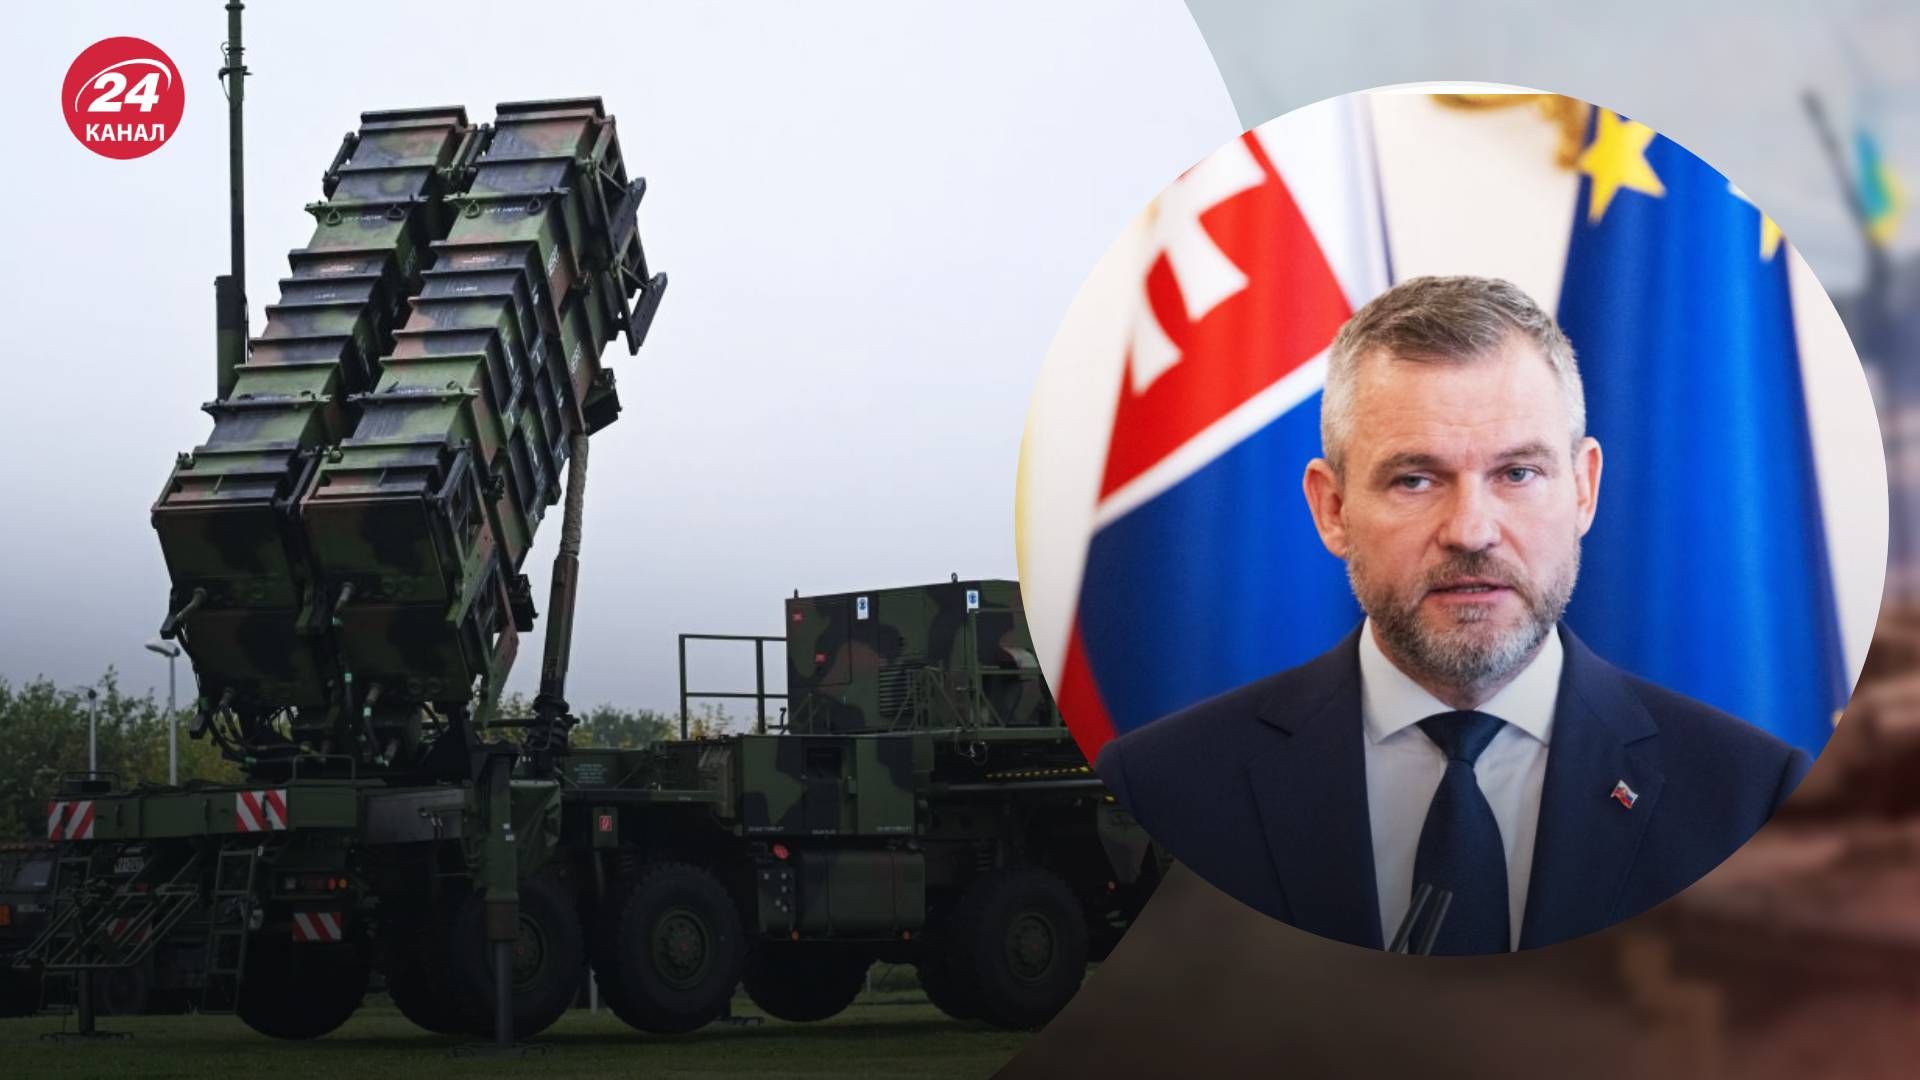  Словакия жалуется из-за ПВО